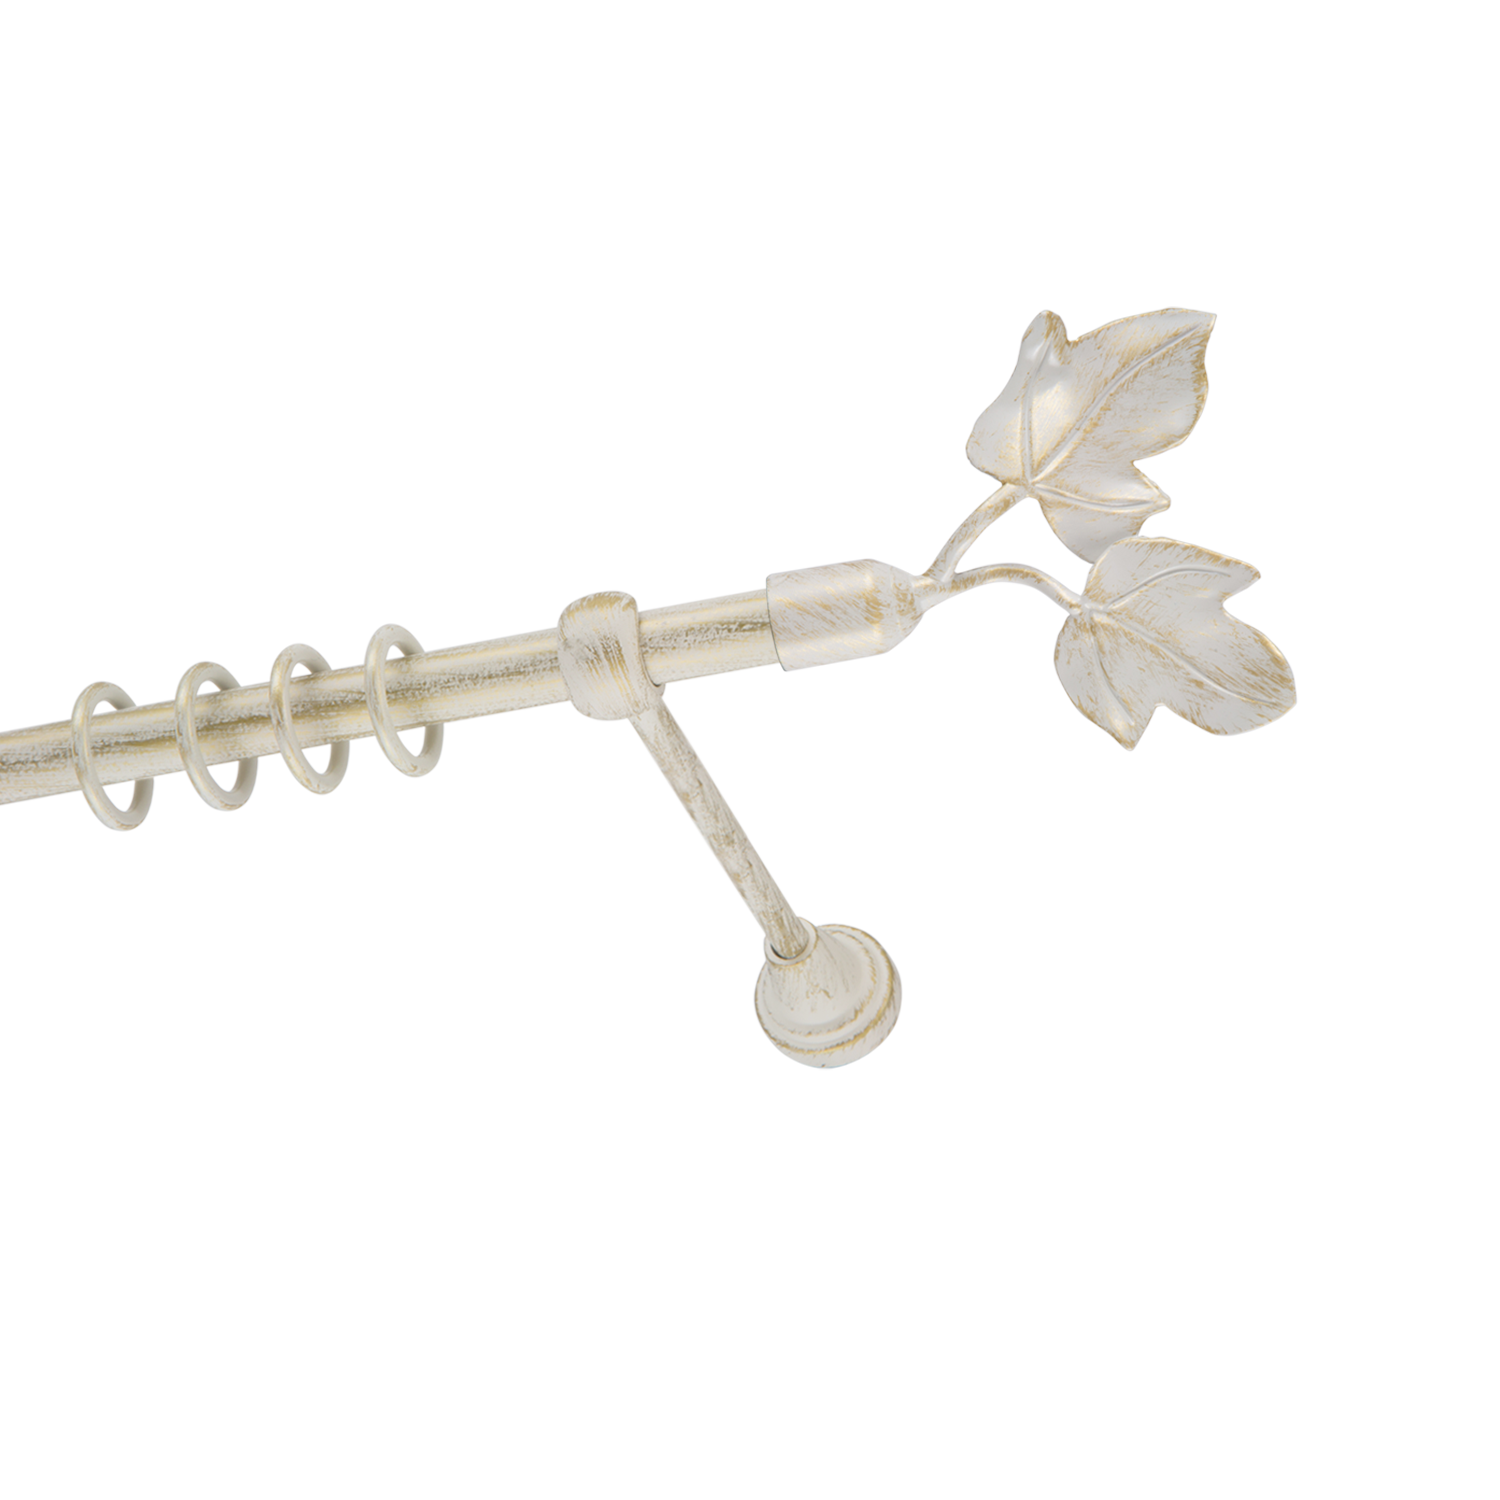 Металлический карниз для штор Листья, однорядный 16 мм, белый, гладкая штанга, длина 200 см - фото Wikidecor.ru